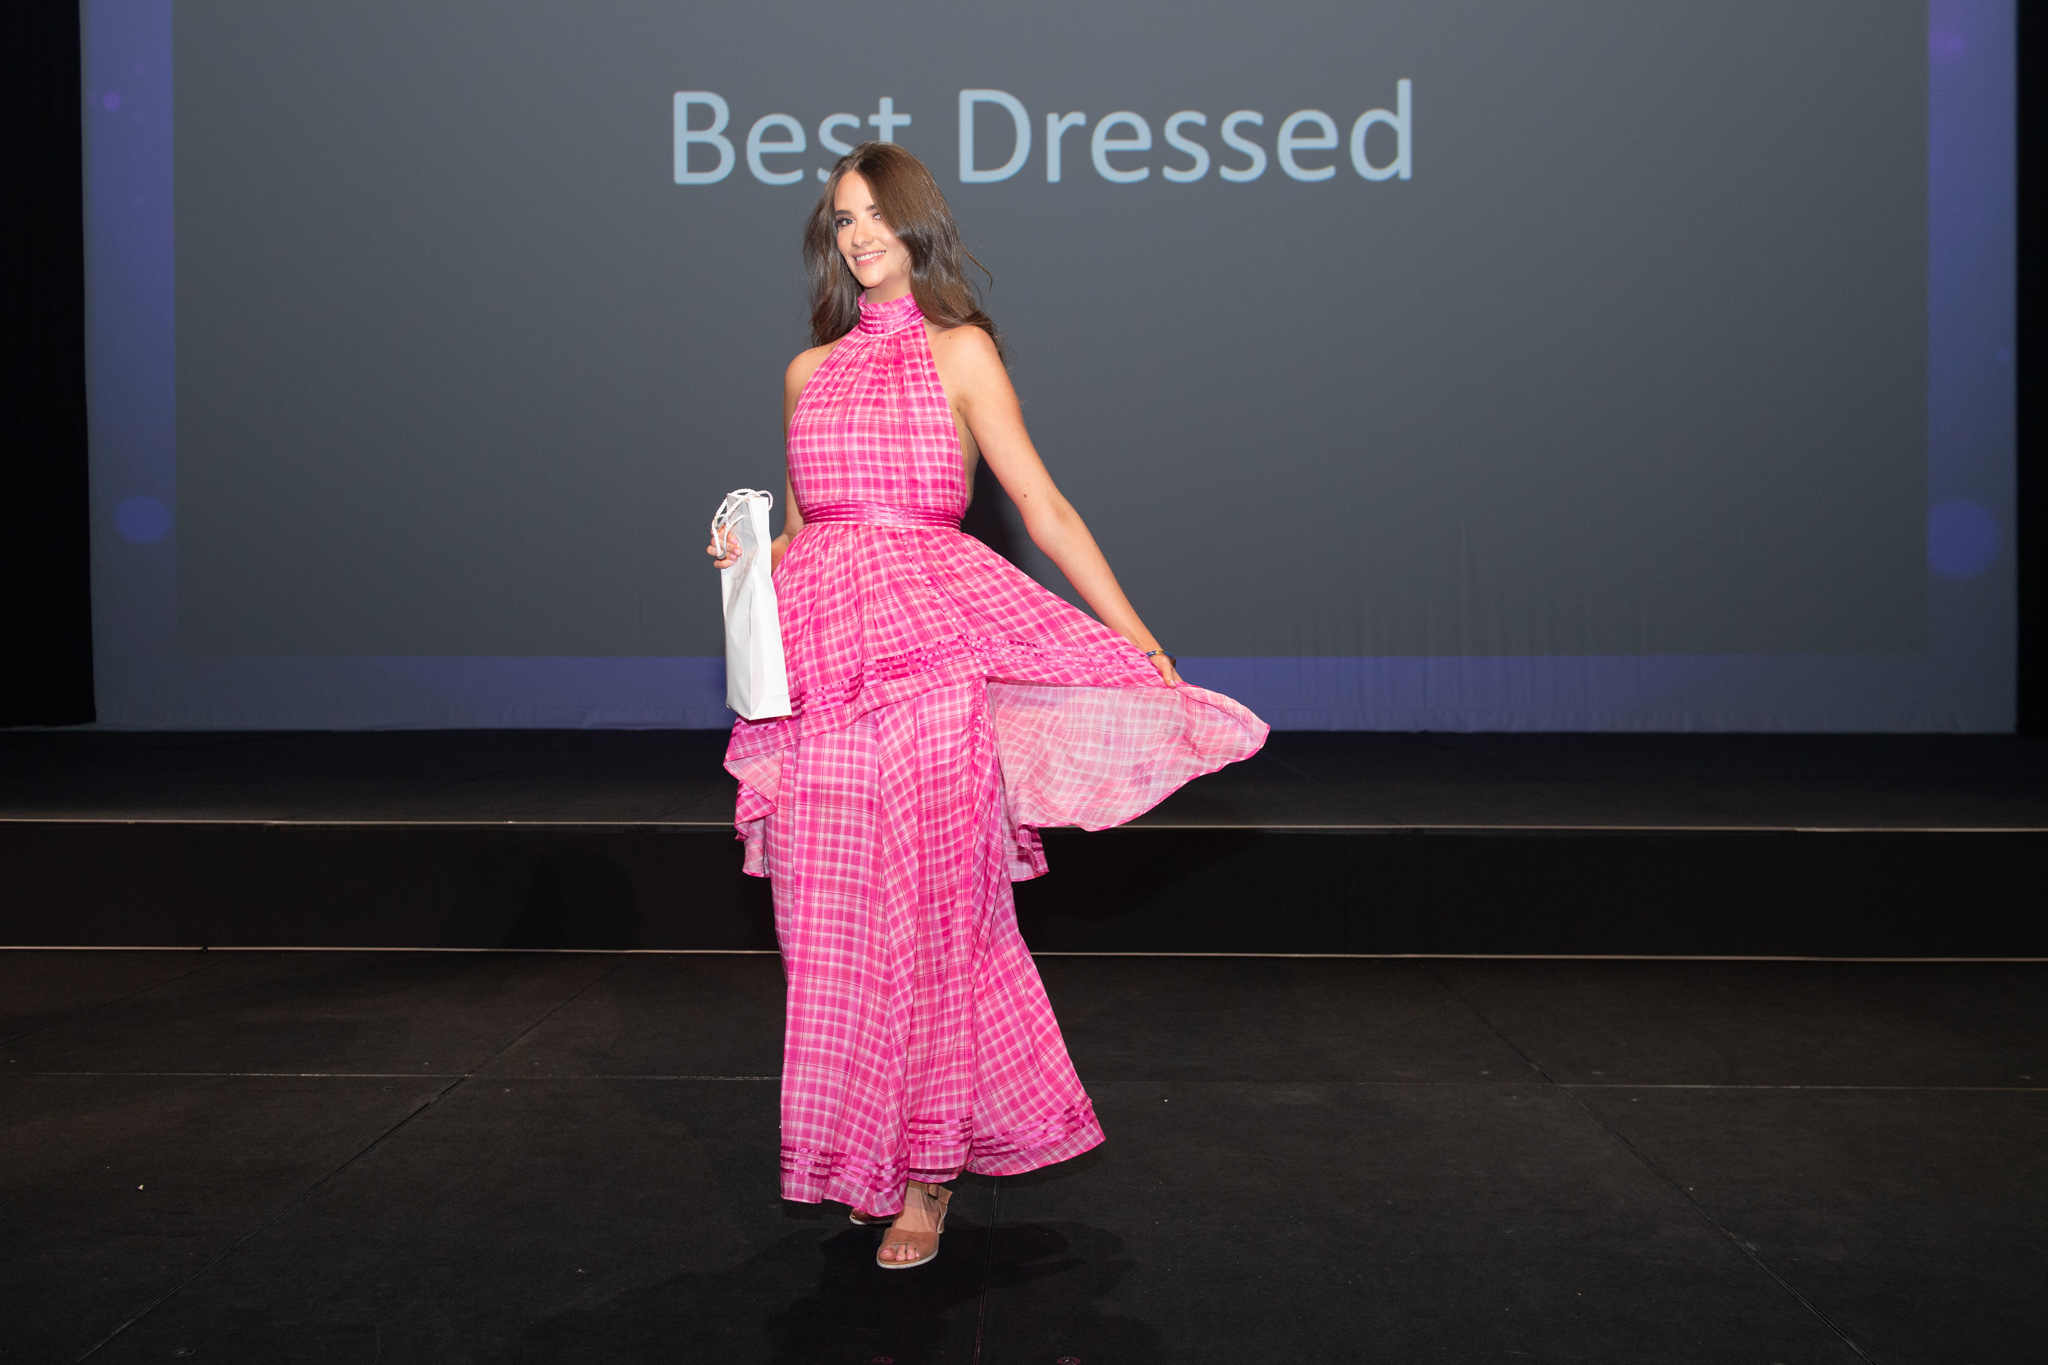 Social Media Manager Gemma Easton wins Best Dressed